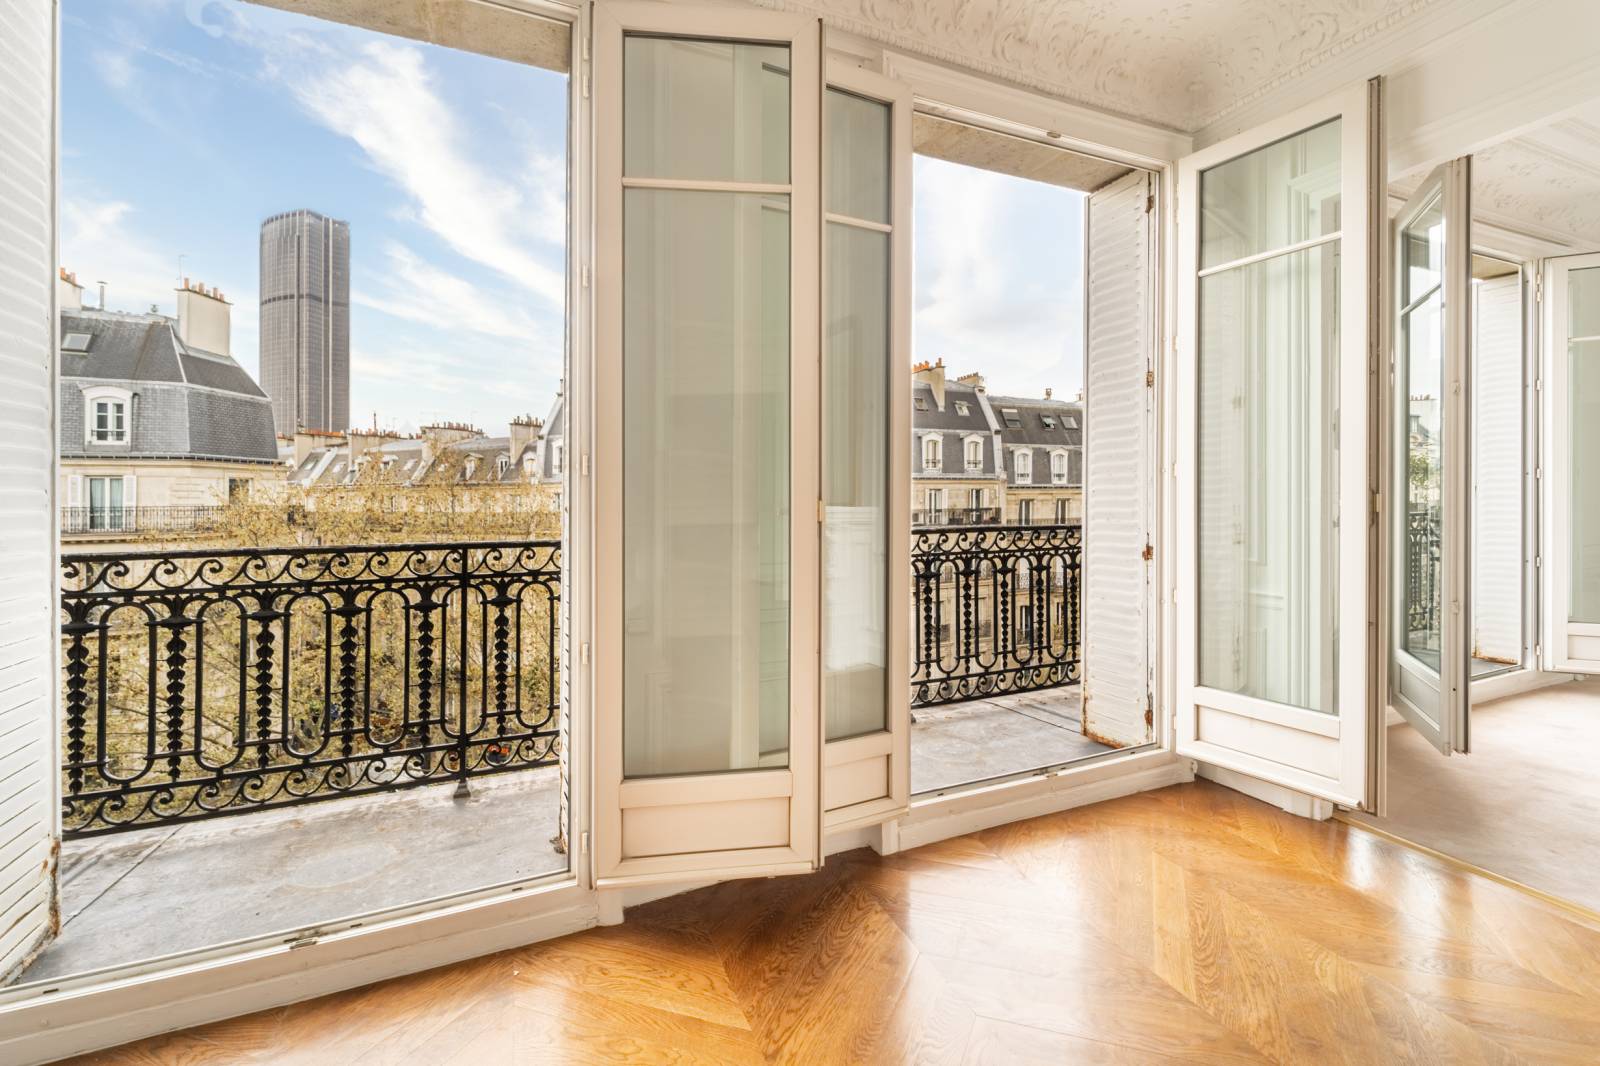 Appartement familial avec 4 chambres au 5ème étage avec ascenseur et balcon filant - Paris 6ème : Boulevard Raspail | métro Notre-Dame des Champs  